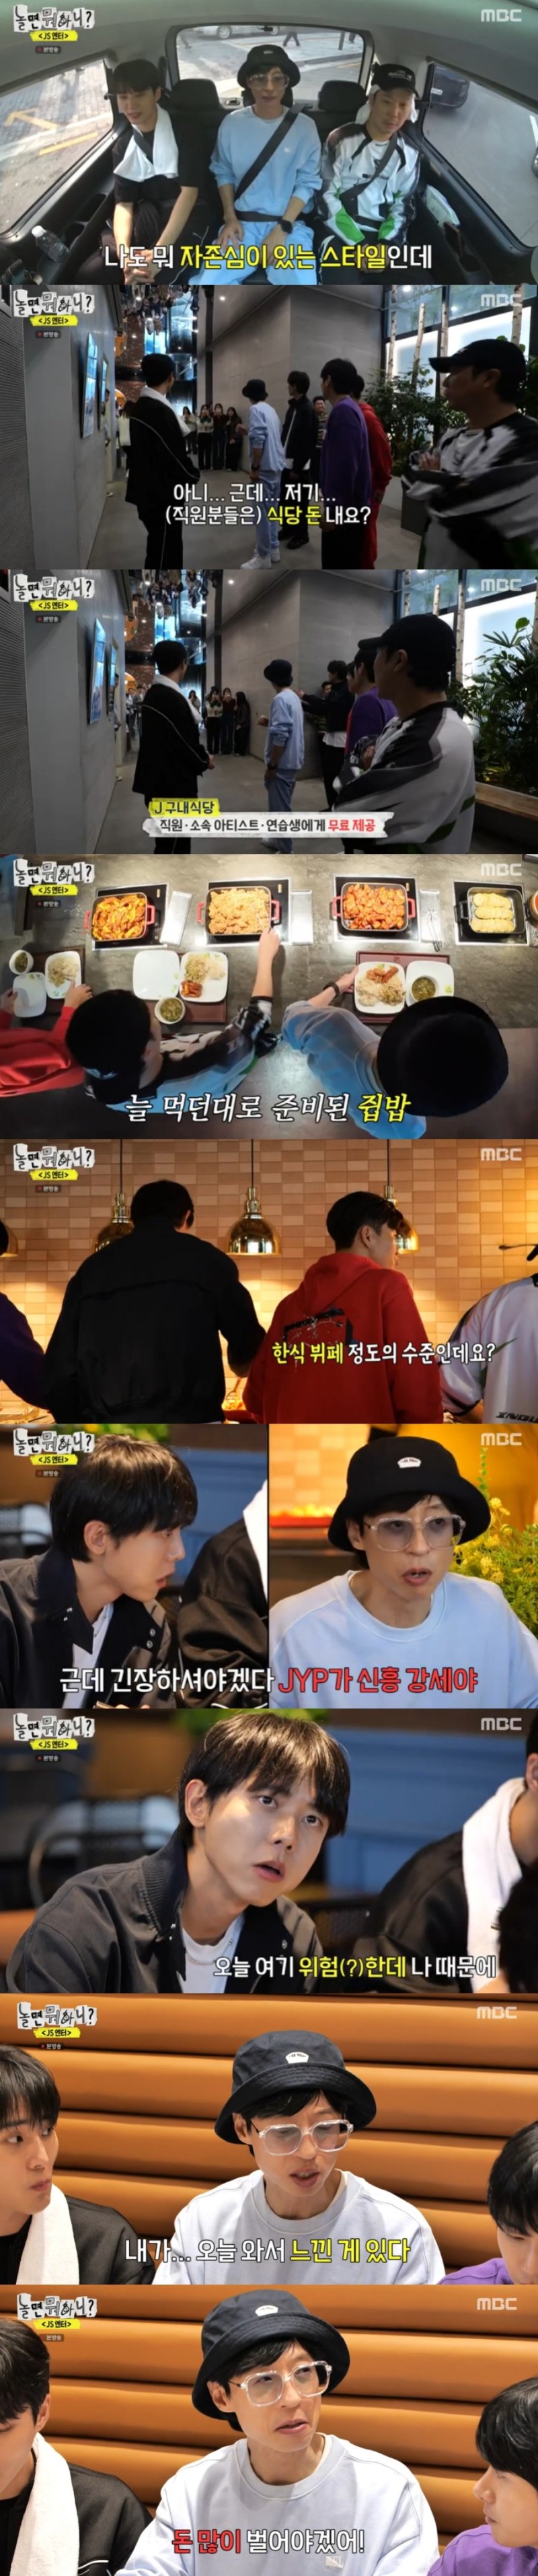 유재석, JYP 구내식당 보며 다짐…"돈 많이 벌어야겠다" [RE:TV]